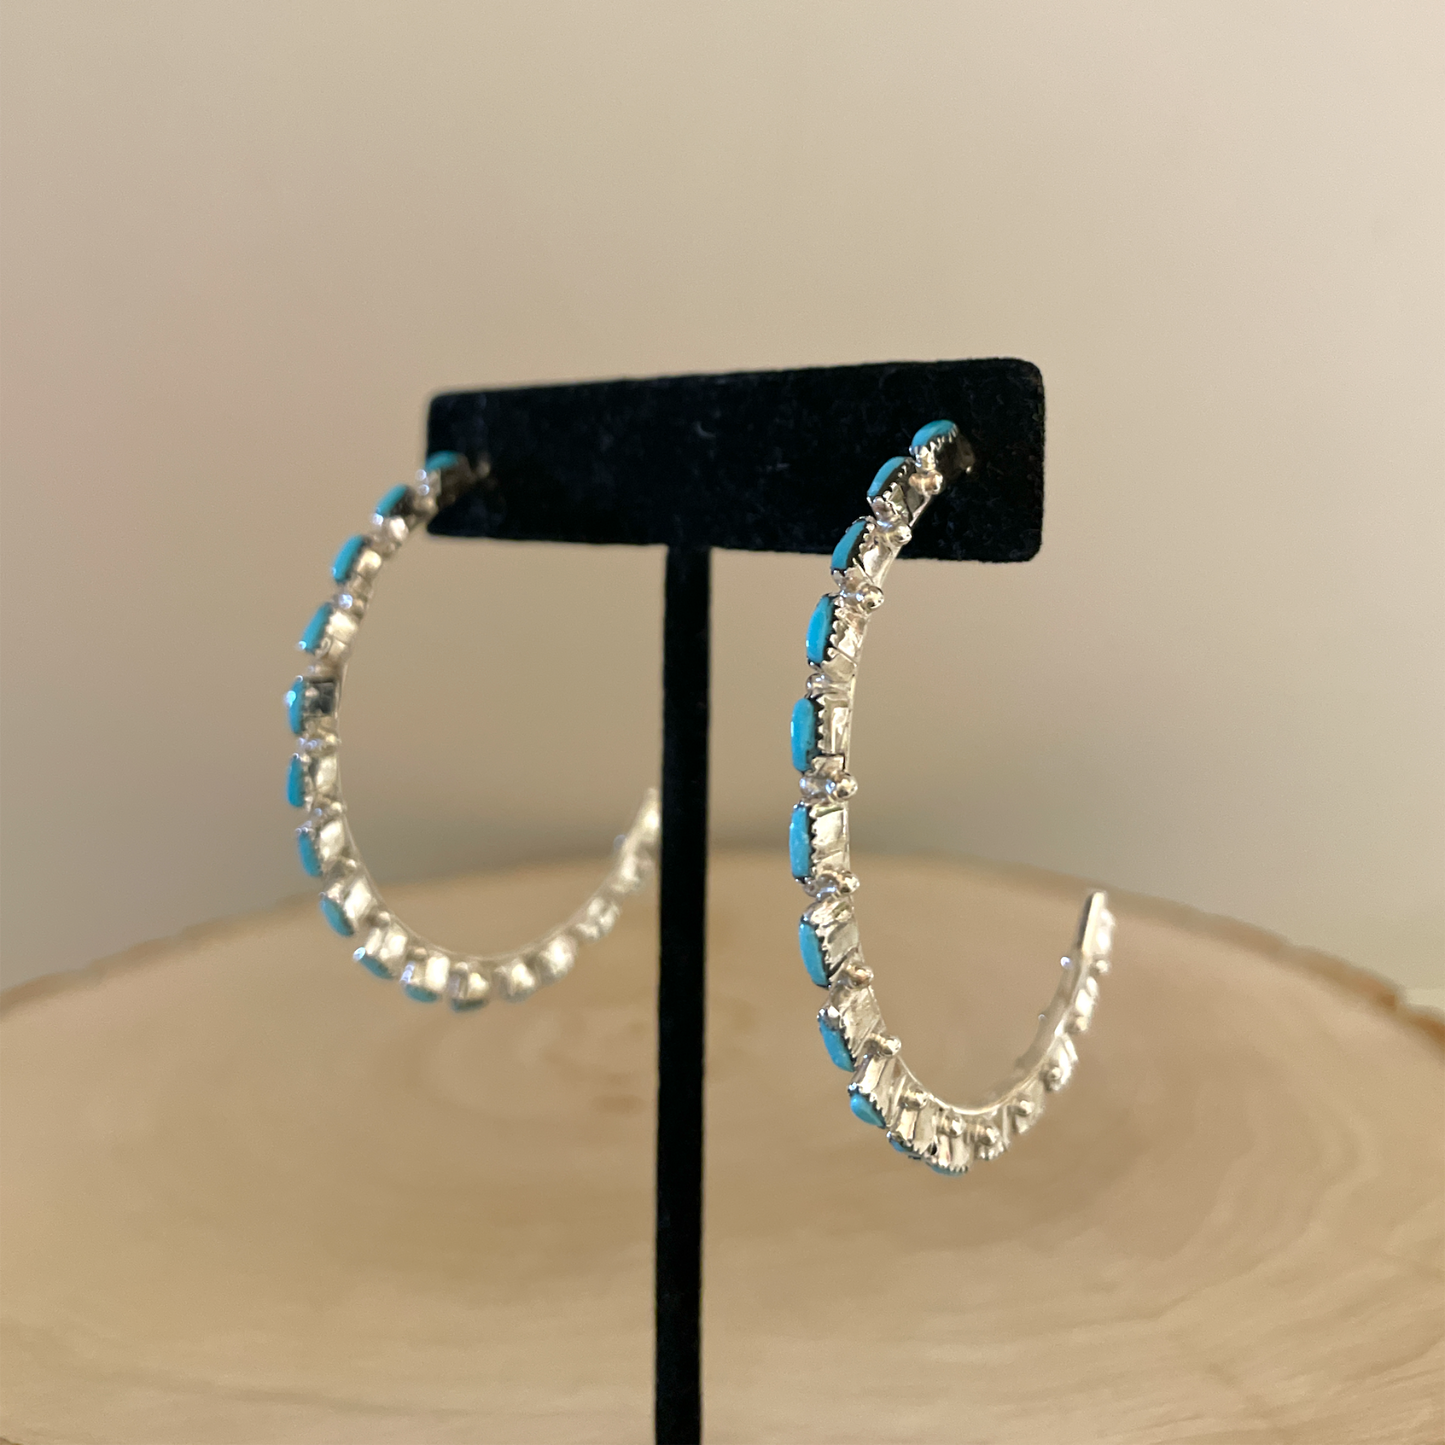 Needlepoint Turquoise Hoop Earrings 2"